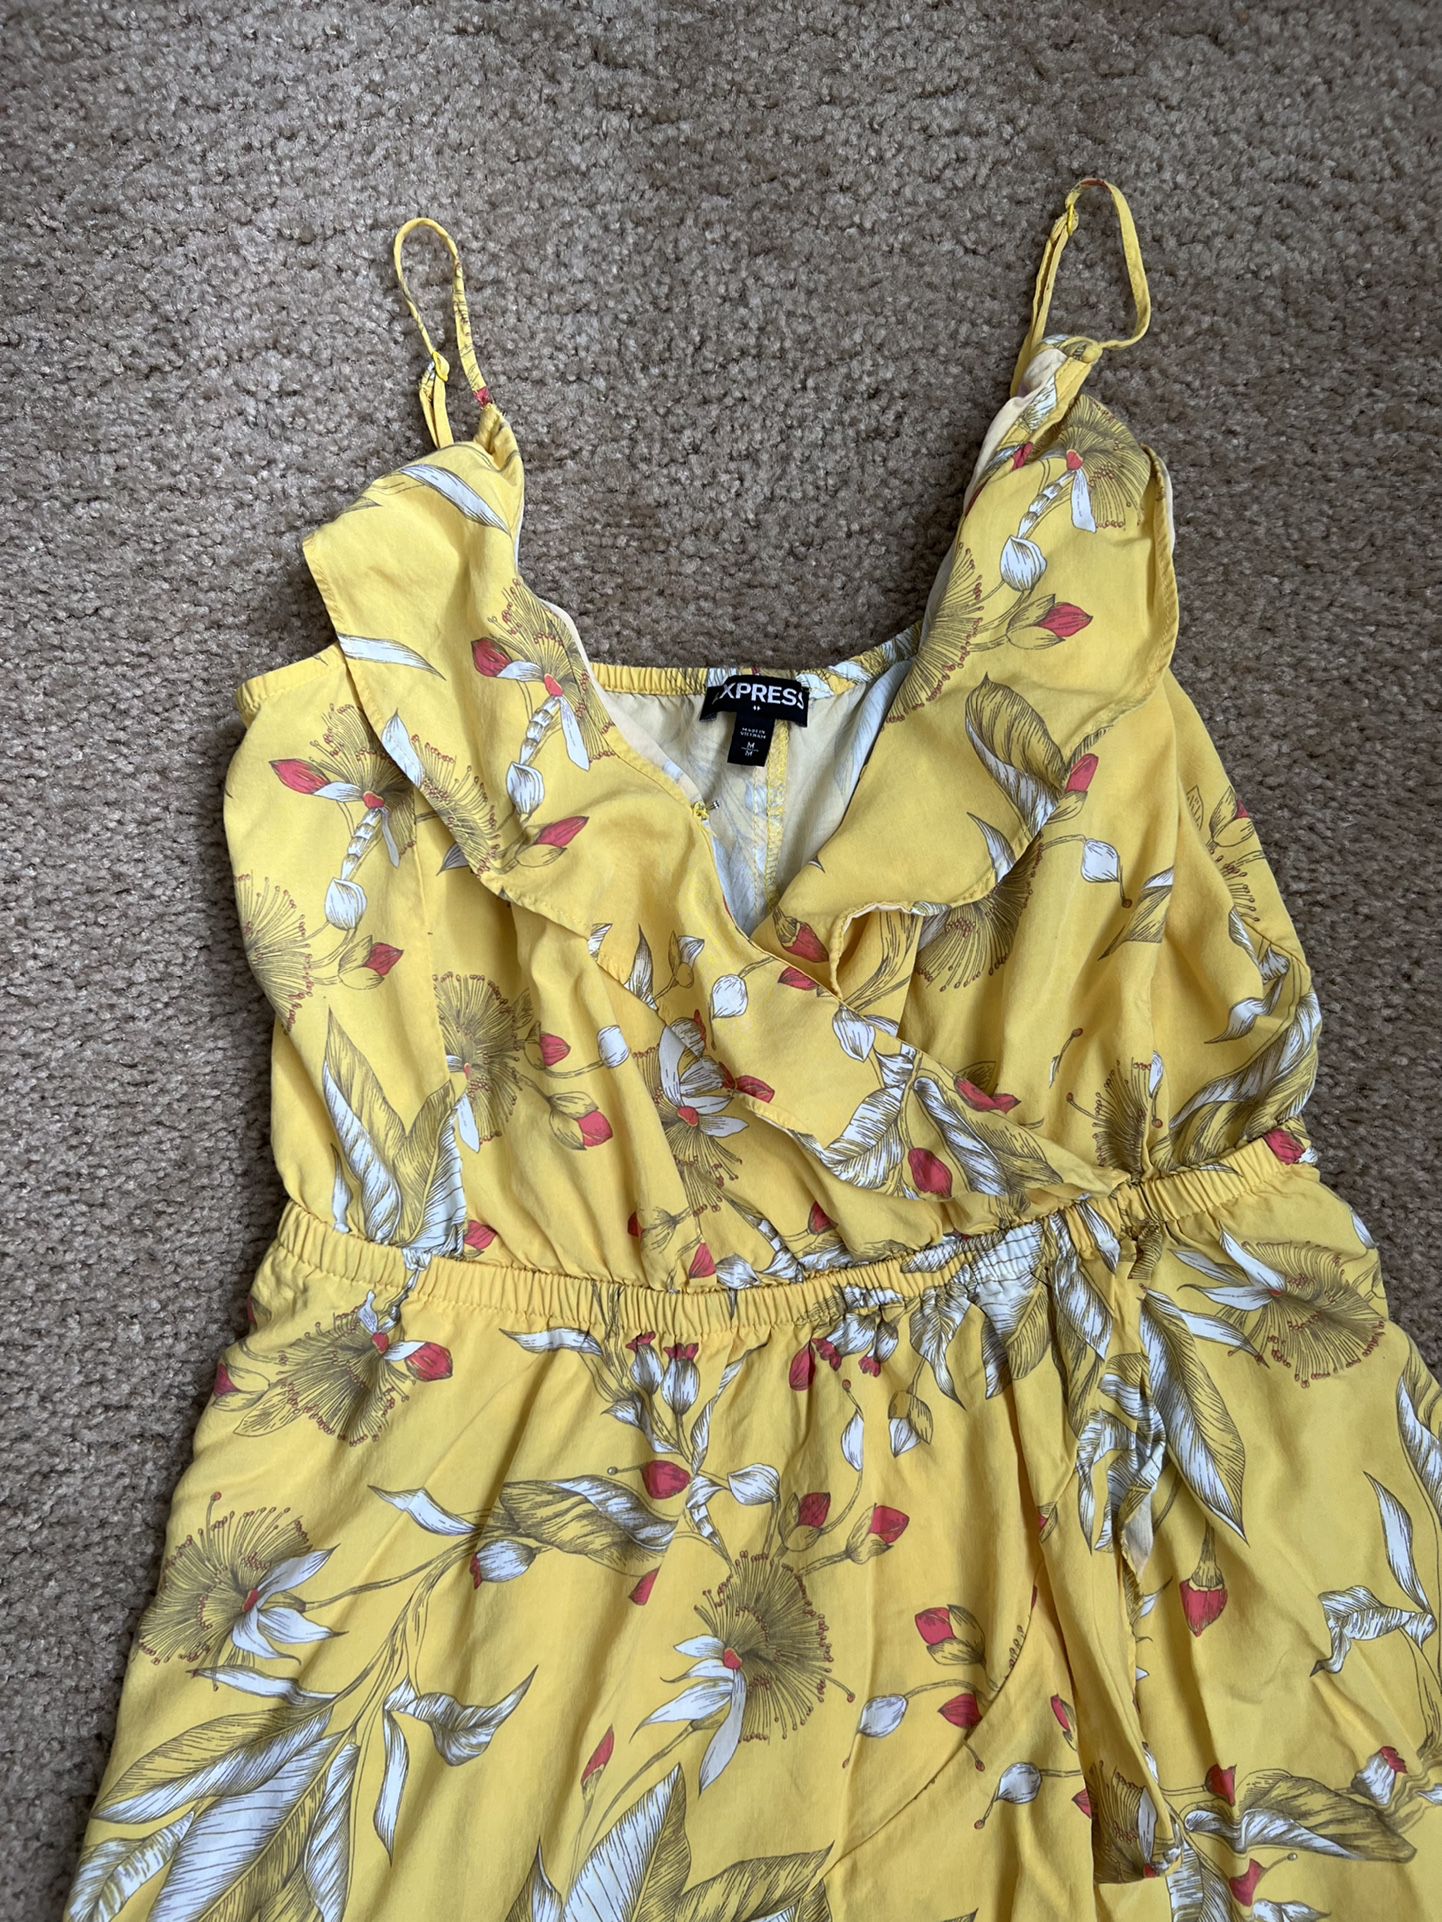 Express Women’s Sundress Yellow Floral Dress Size Medium 